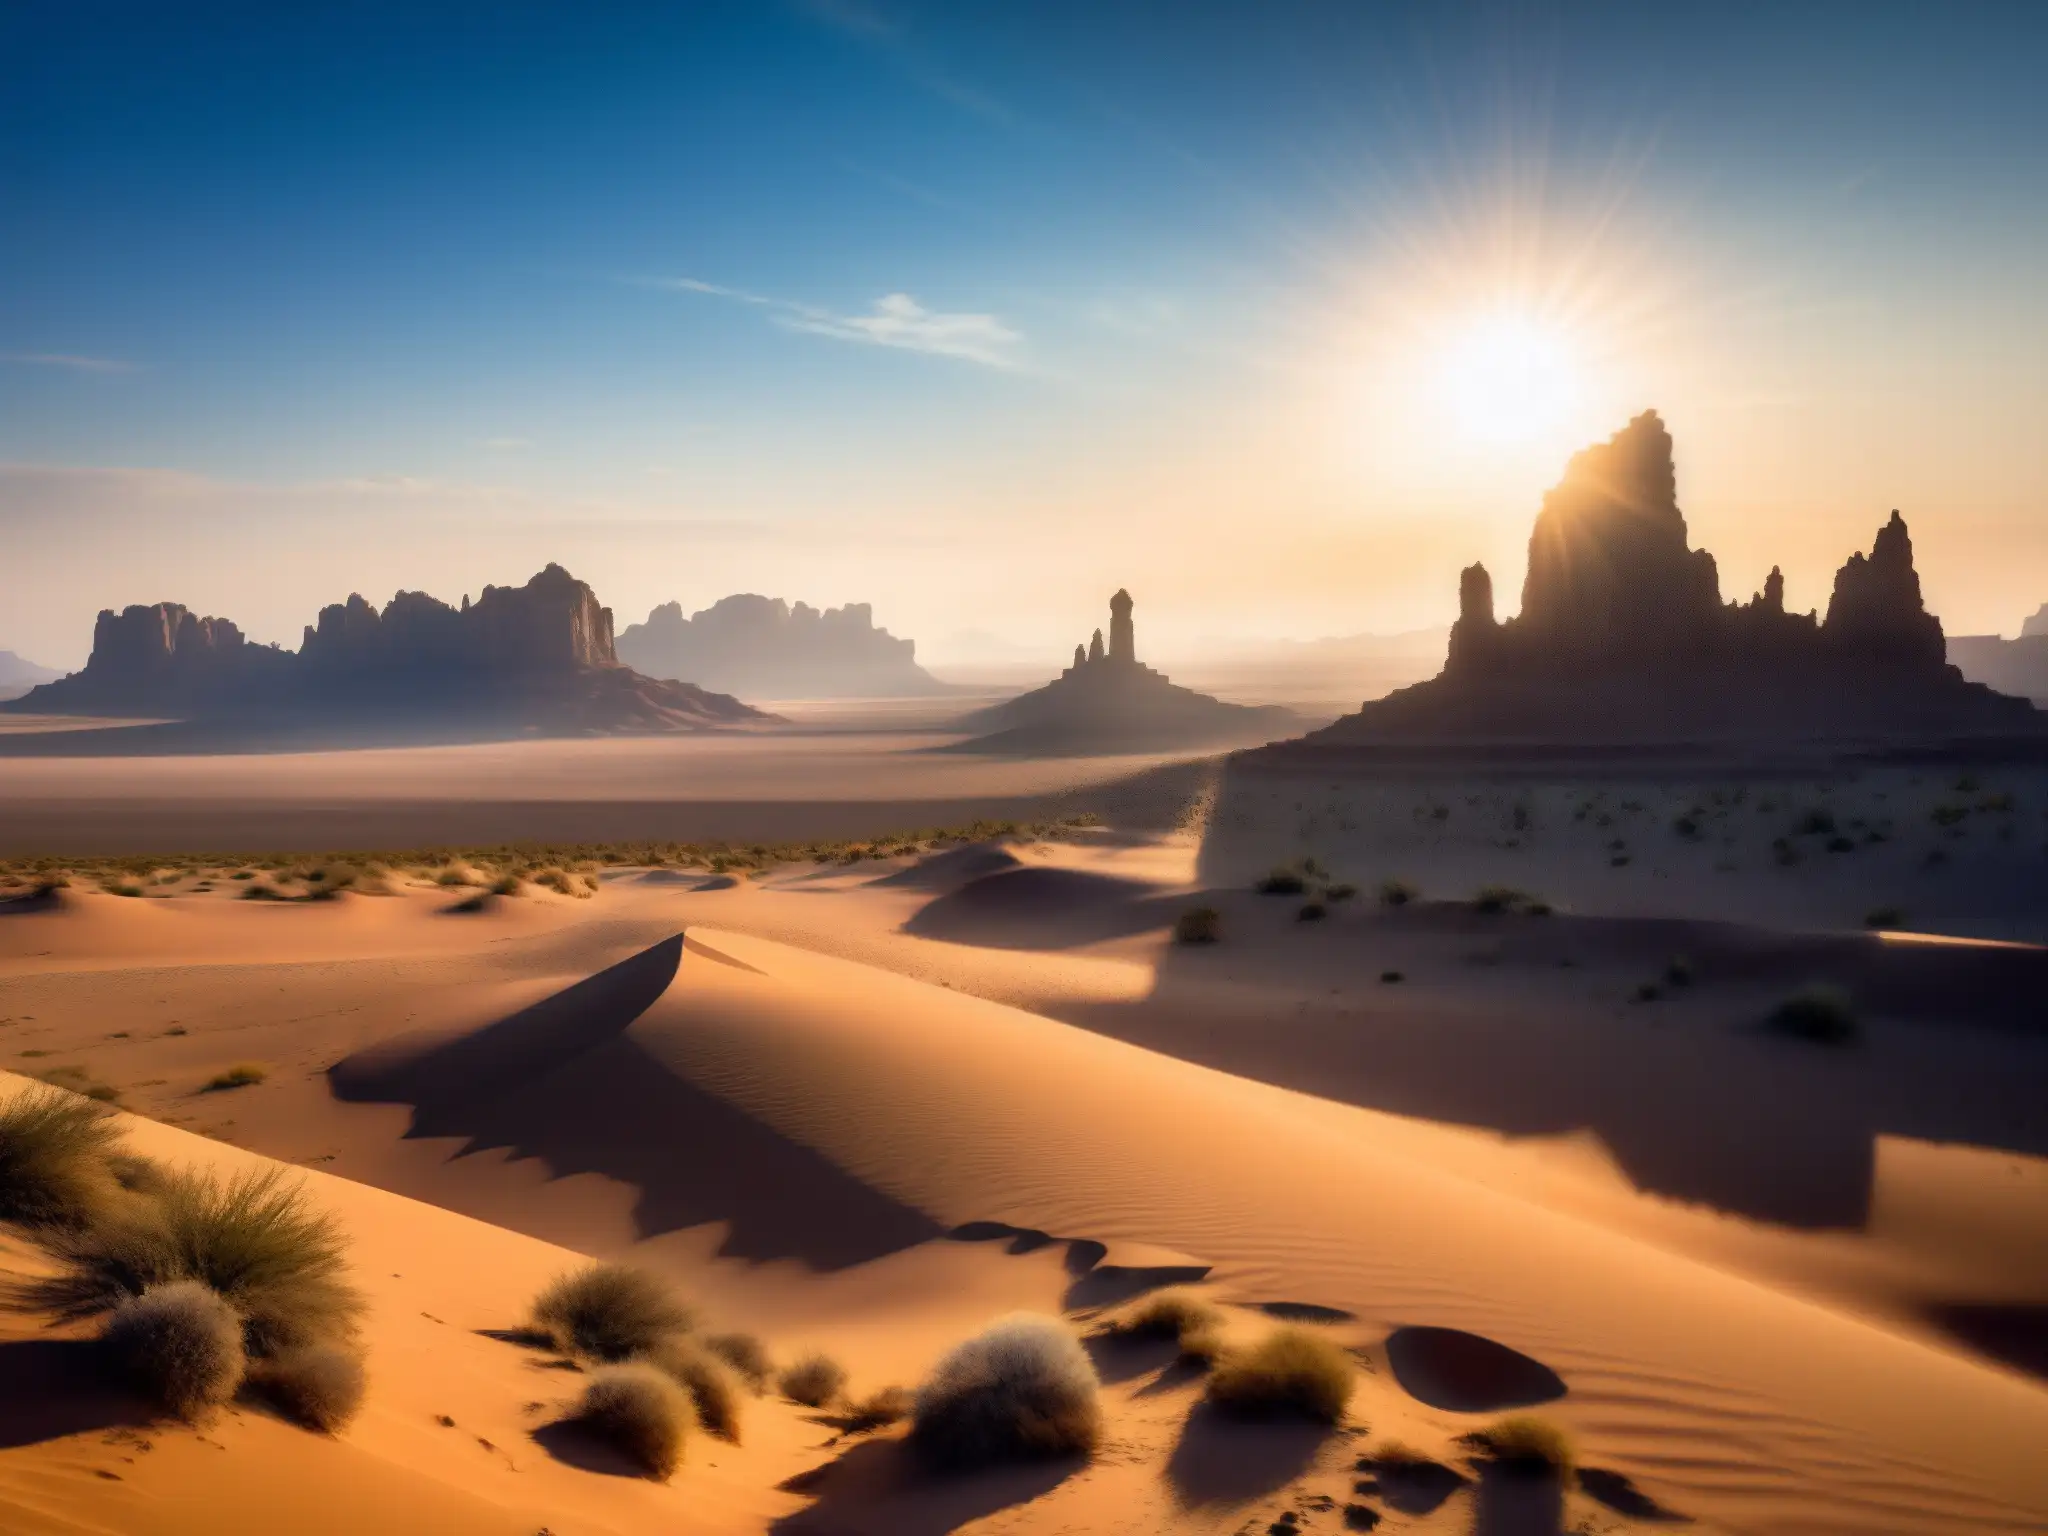 Figura solitaria contempla el misterio de la Zona de Silencio en el desierto de Estados Unidos, bajo un cielo azul y enigmático